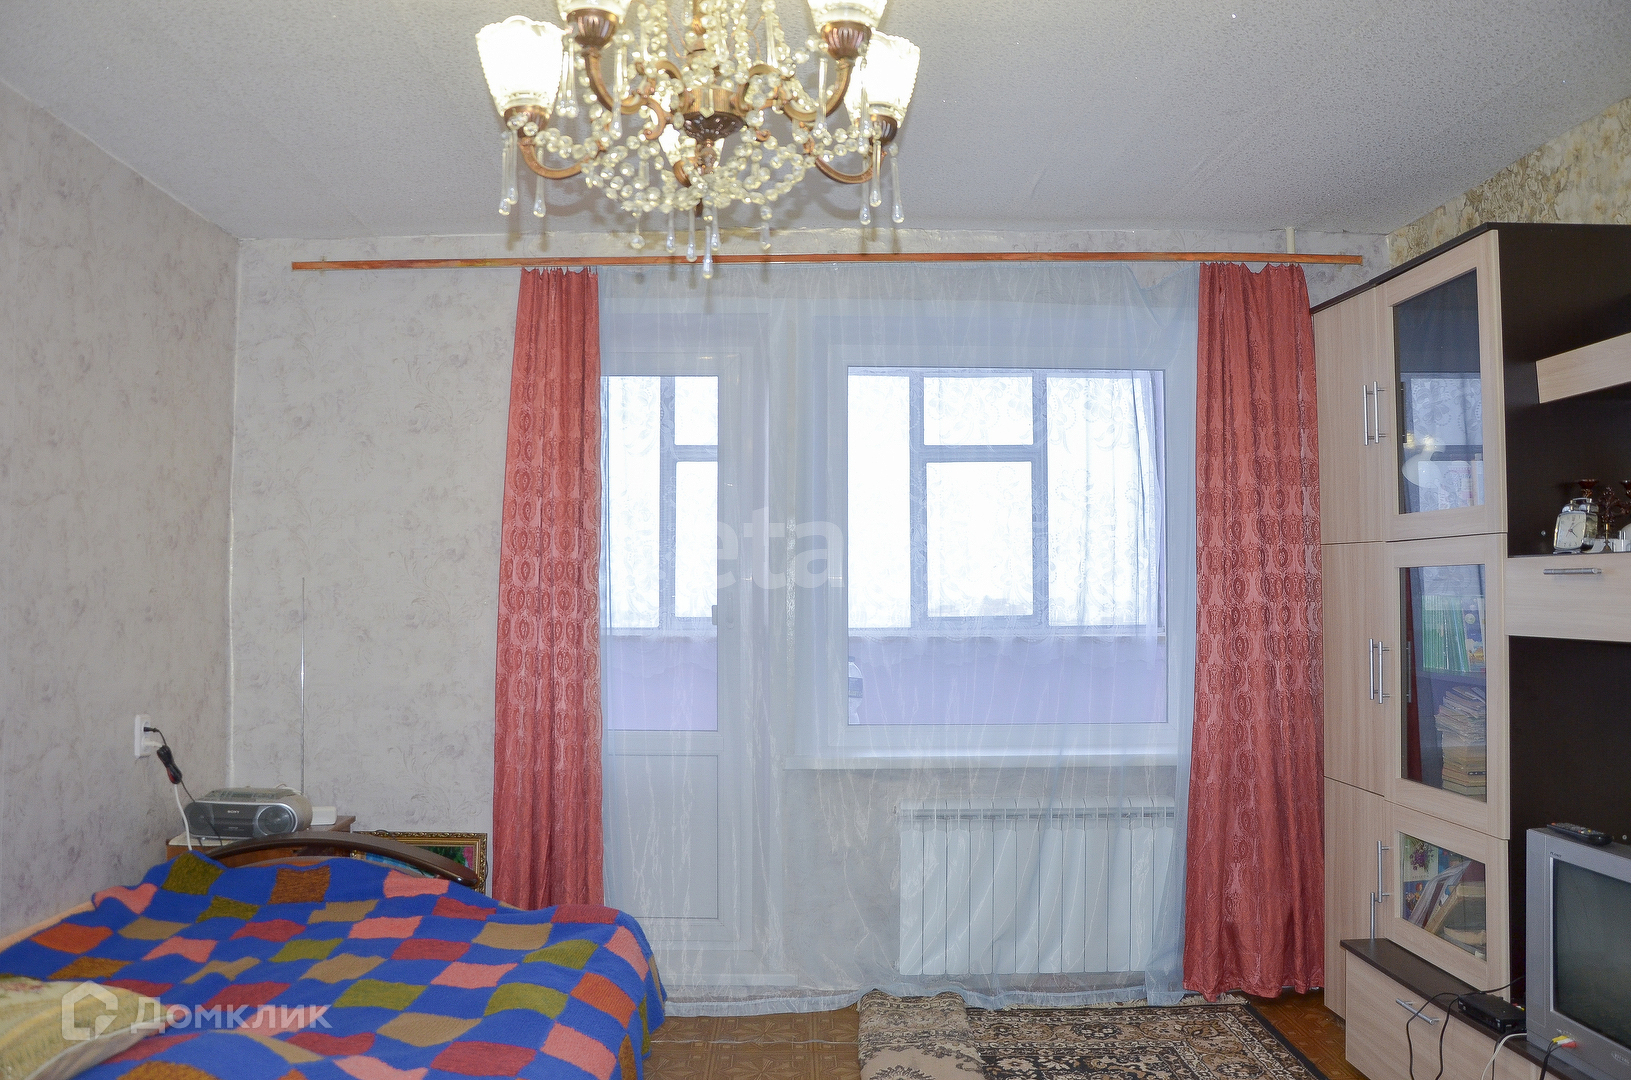 Куплю квартиру в Саранске Мордовия 1 комнатную. Акварель Саранск Косарева 15 купить квартиру. Квартиры в саранске купить 1 комнатную химмаш